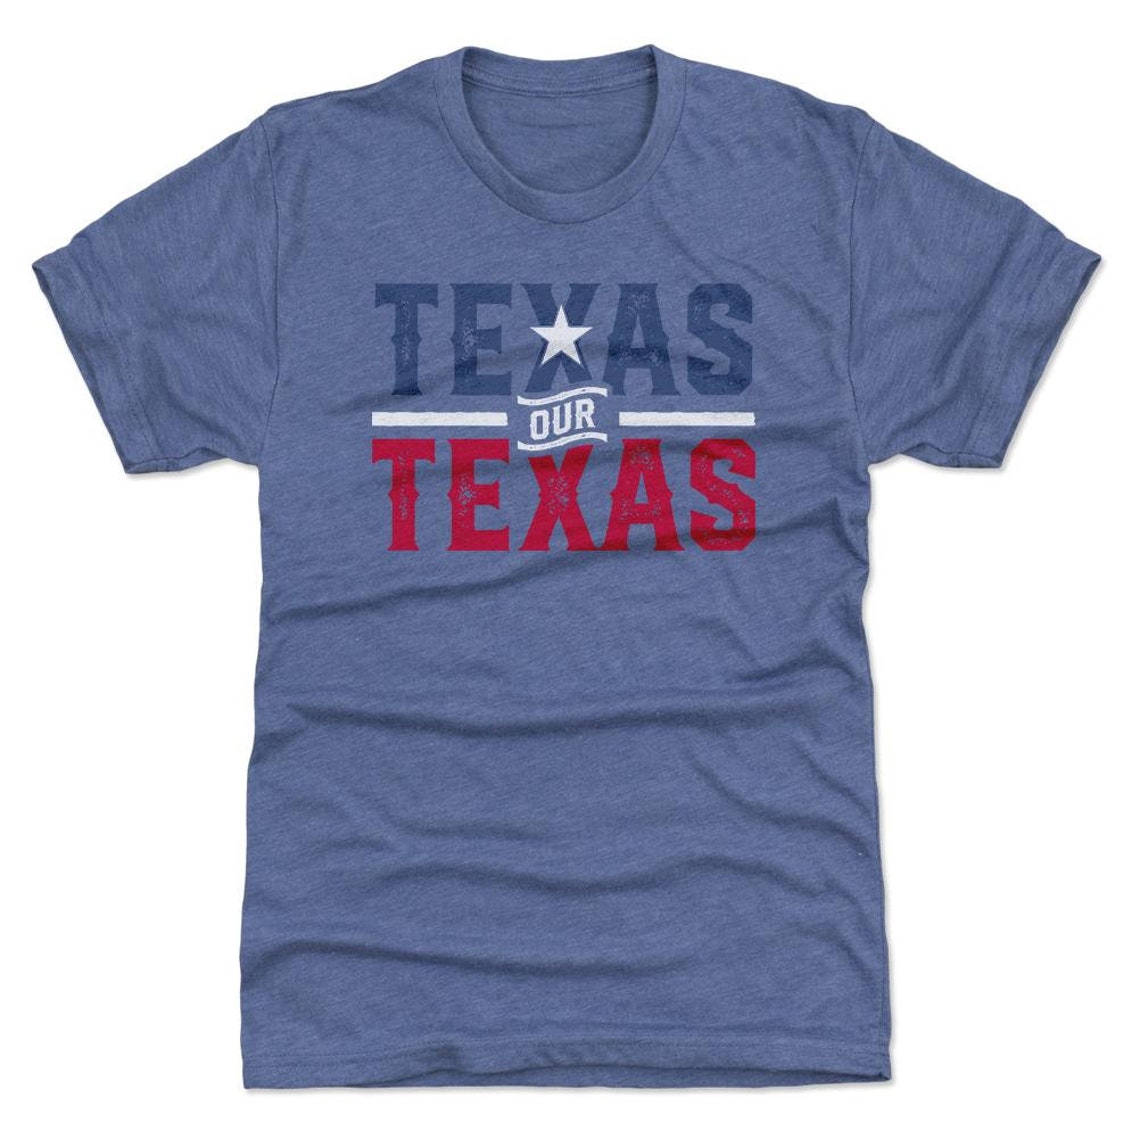 Texas Men's Premium T-shirt Texas Lifestyle Texas Our - Etsy